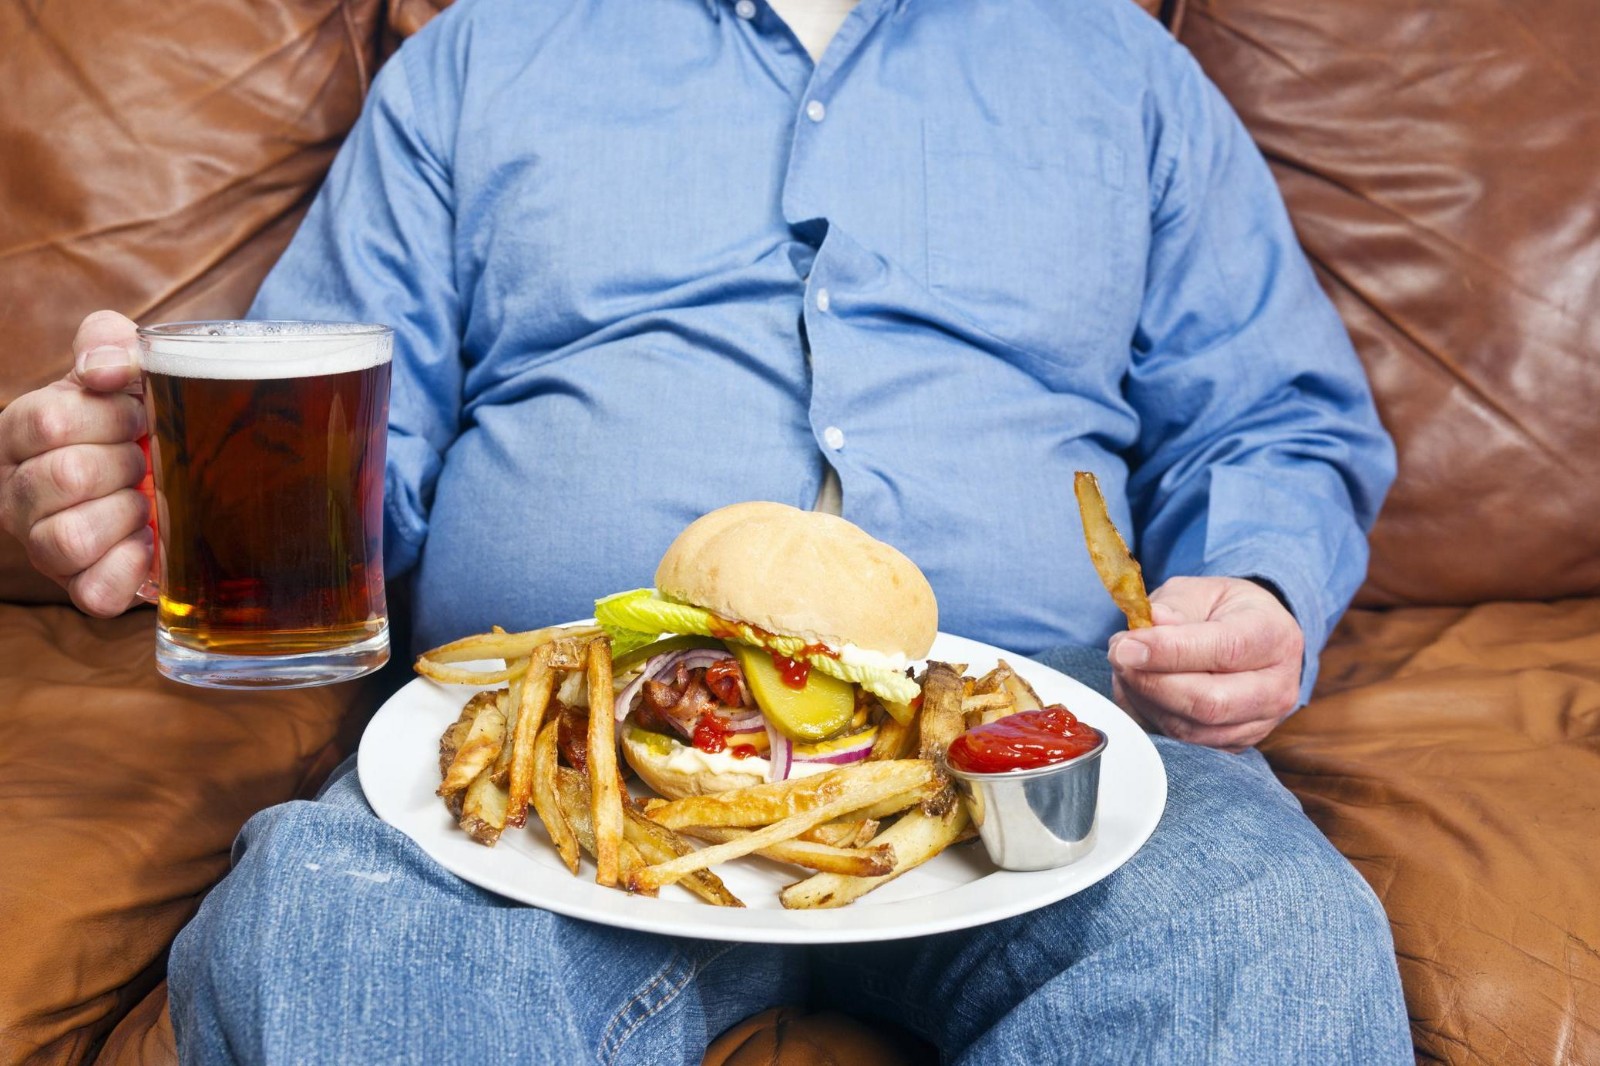 2022最新关于胖子的照片 胖子图片搞笑可爱图片 | 犀牛图片网